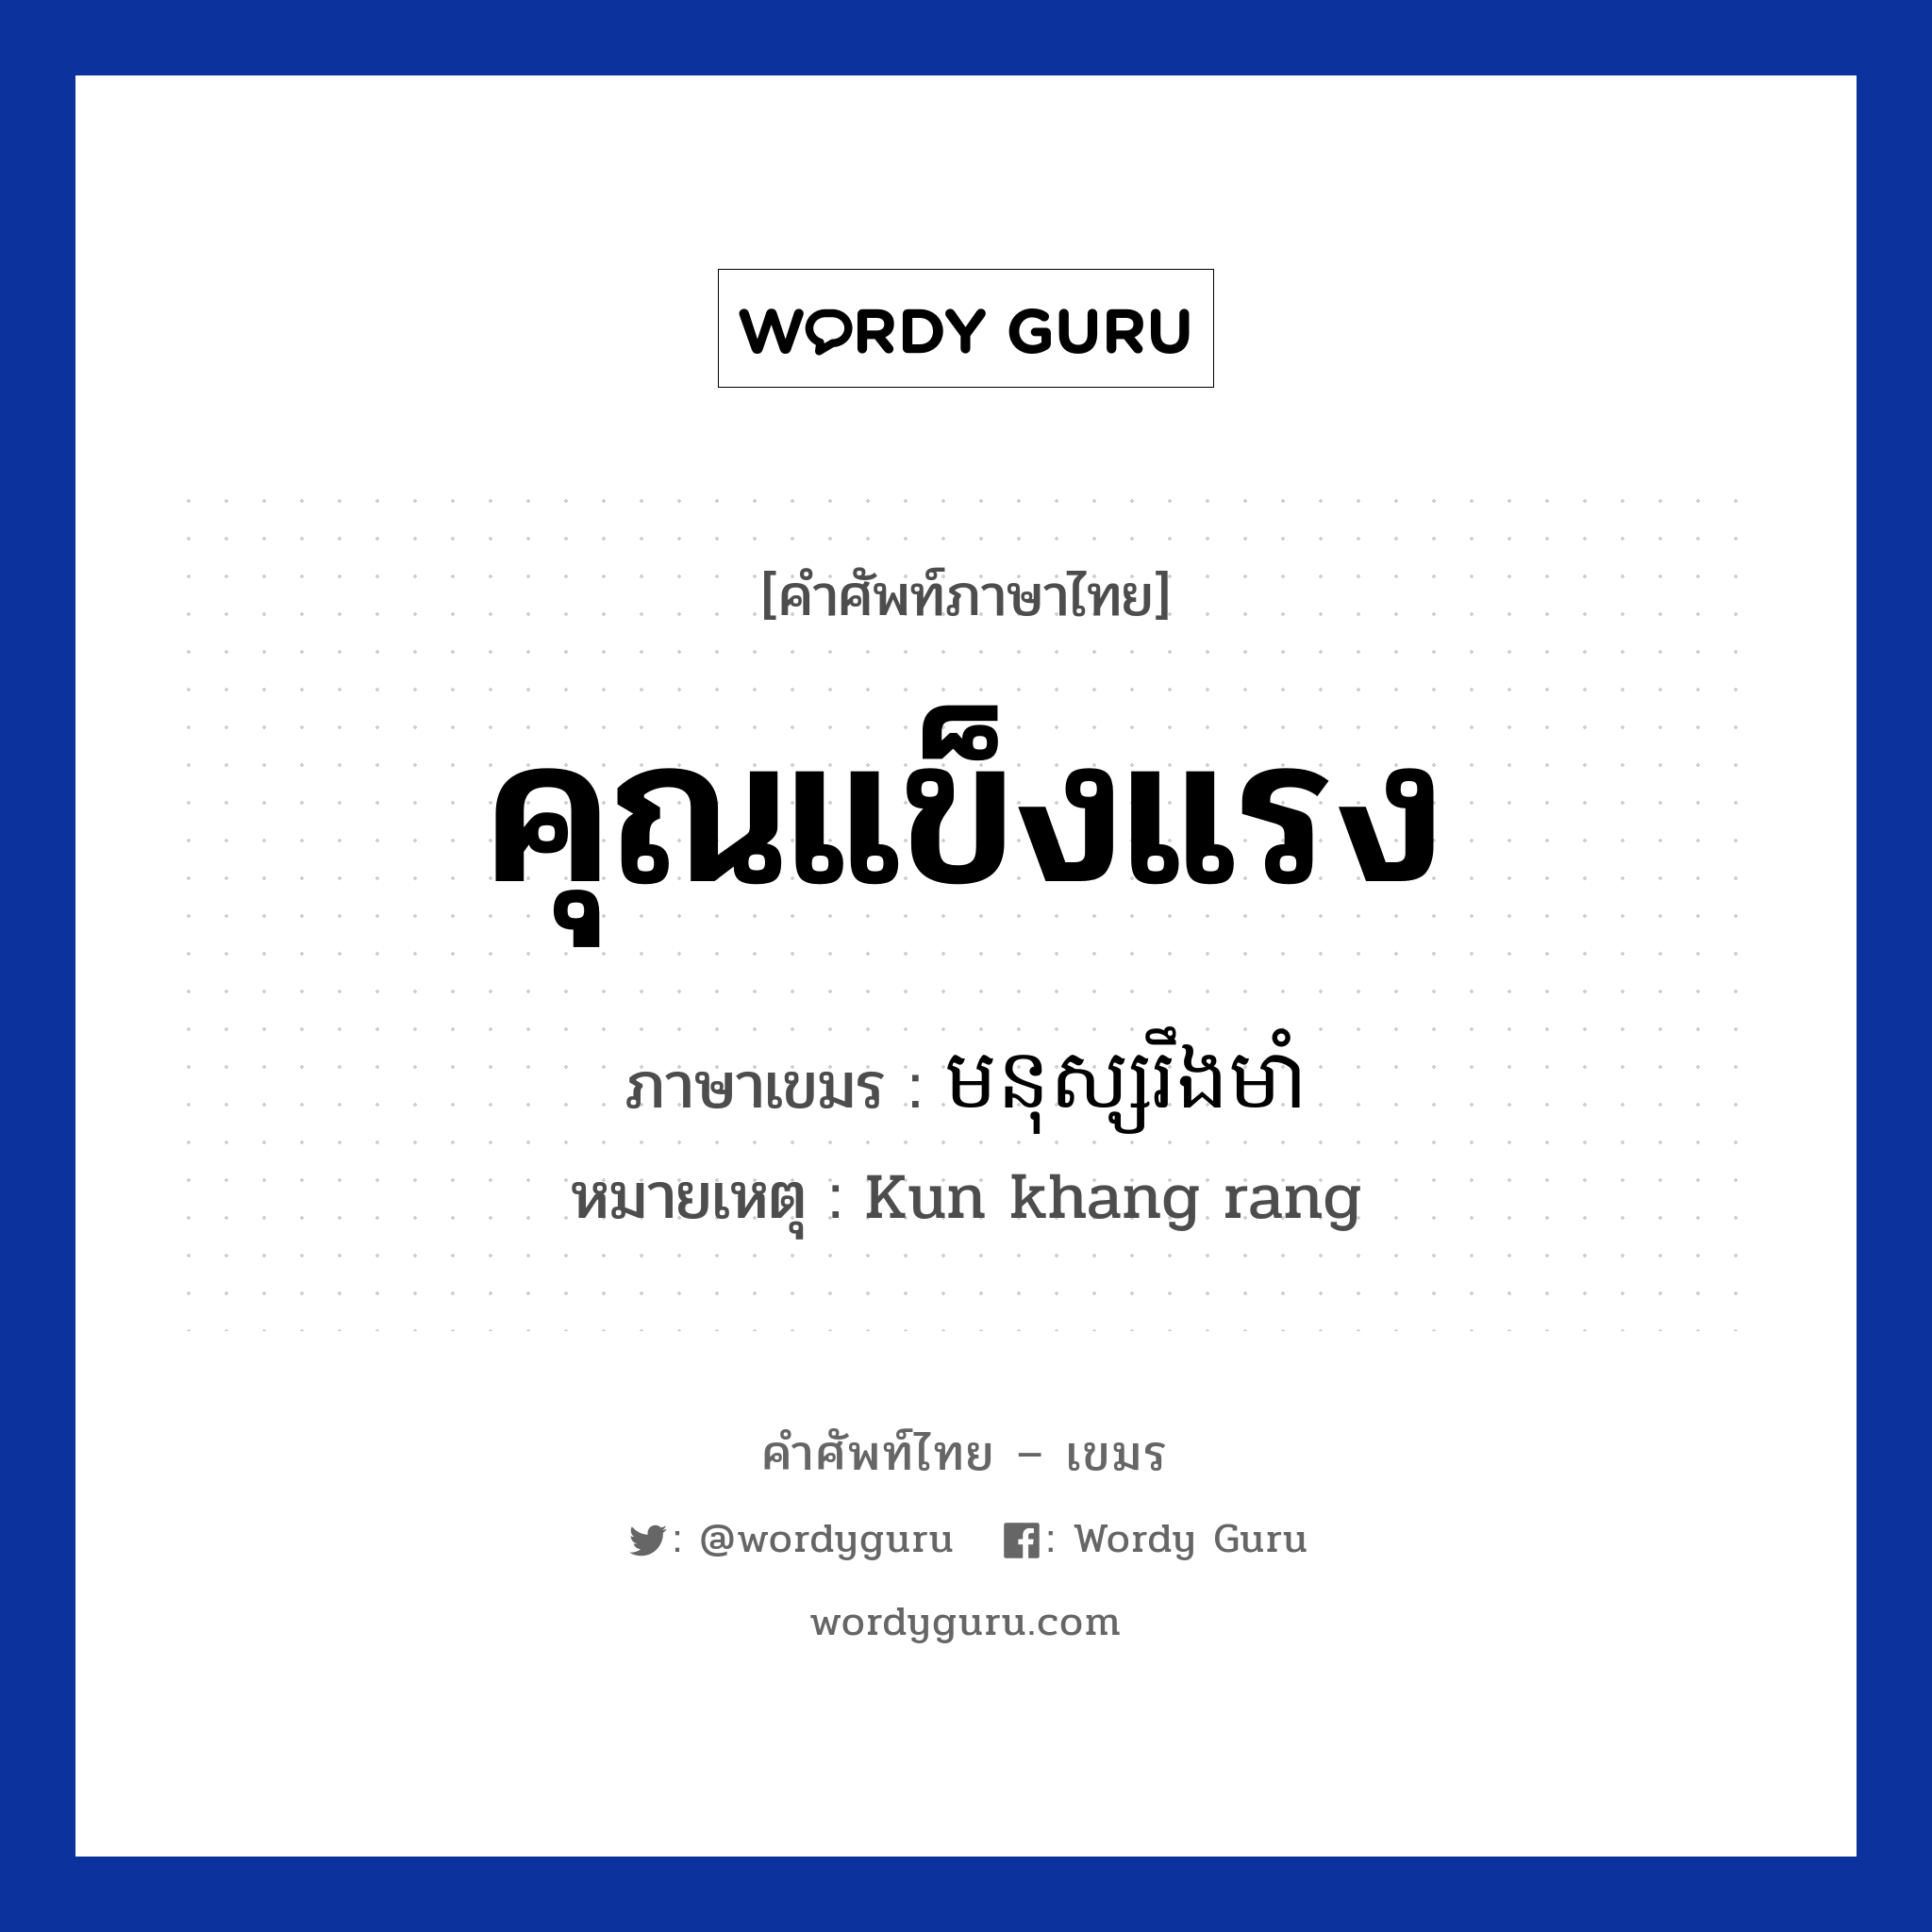 មនុស្សរឹងមាំ ภาษาไทย?, คำศัพท์ภาษาไทย - เขมร មនុស្សរឹងមាំ ภาษาเขมร คุณแข็งแรง หมวด คำชม หมายเหตุ Kun khang rang Monus Rerng Muam หมวด คำชม